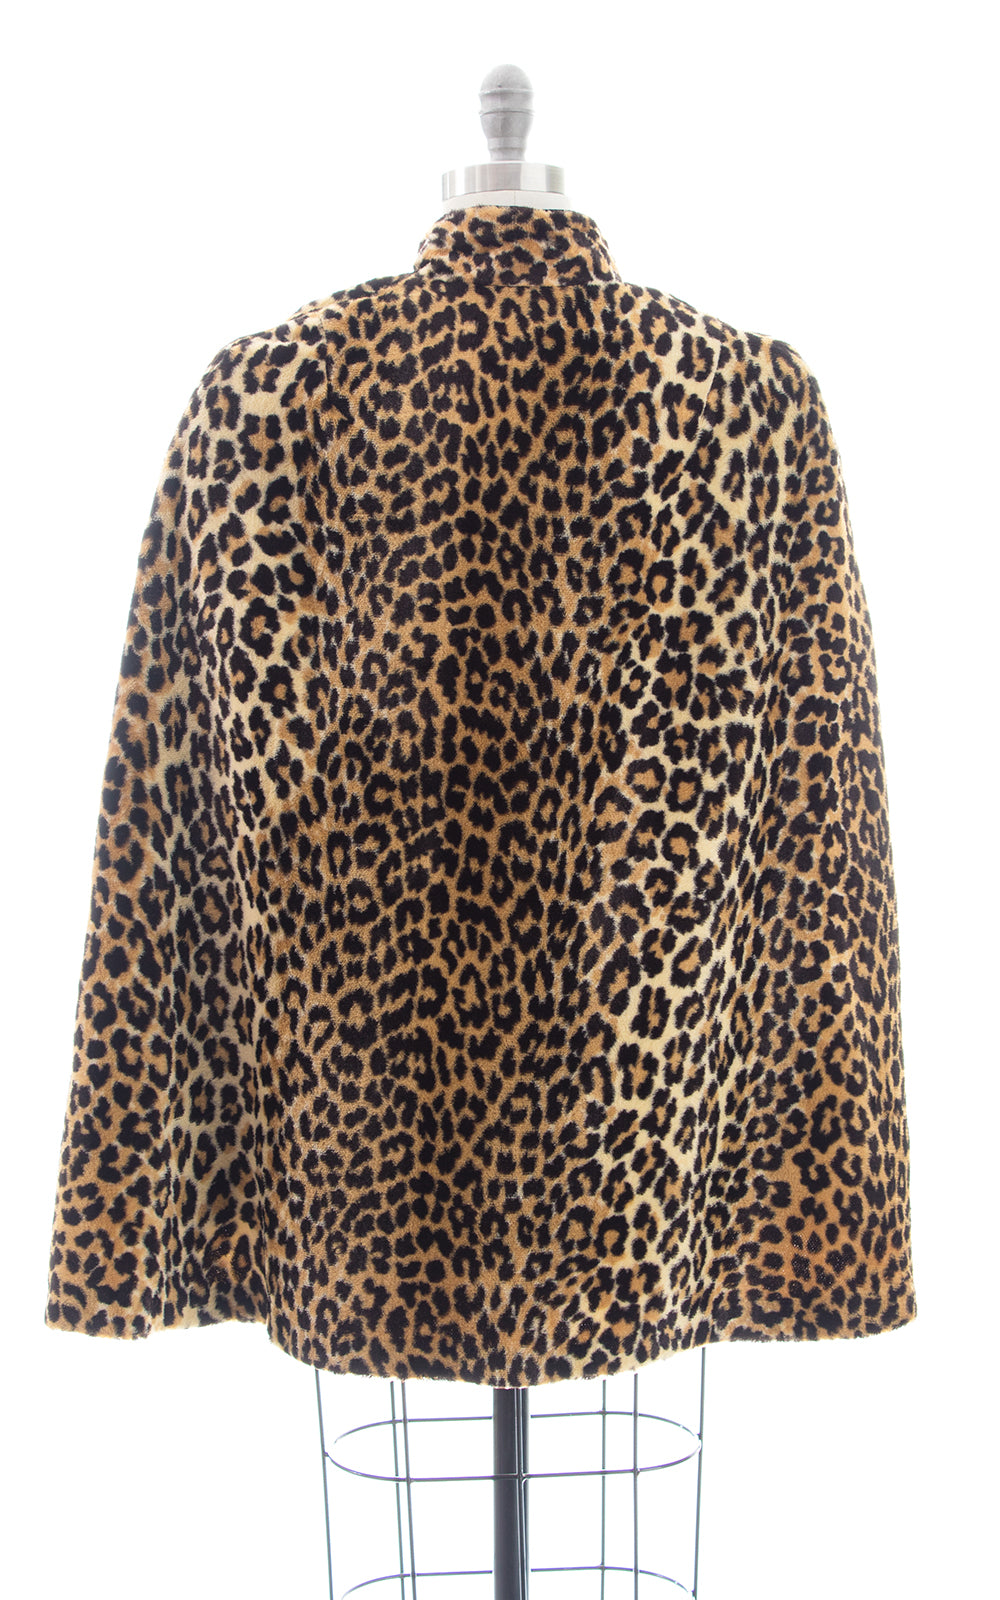 1960s Leopard Print Faux Fur Cape | x-small/small/medium – Birthday ...